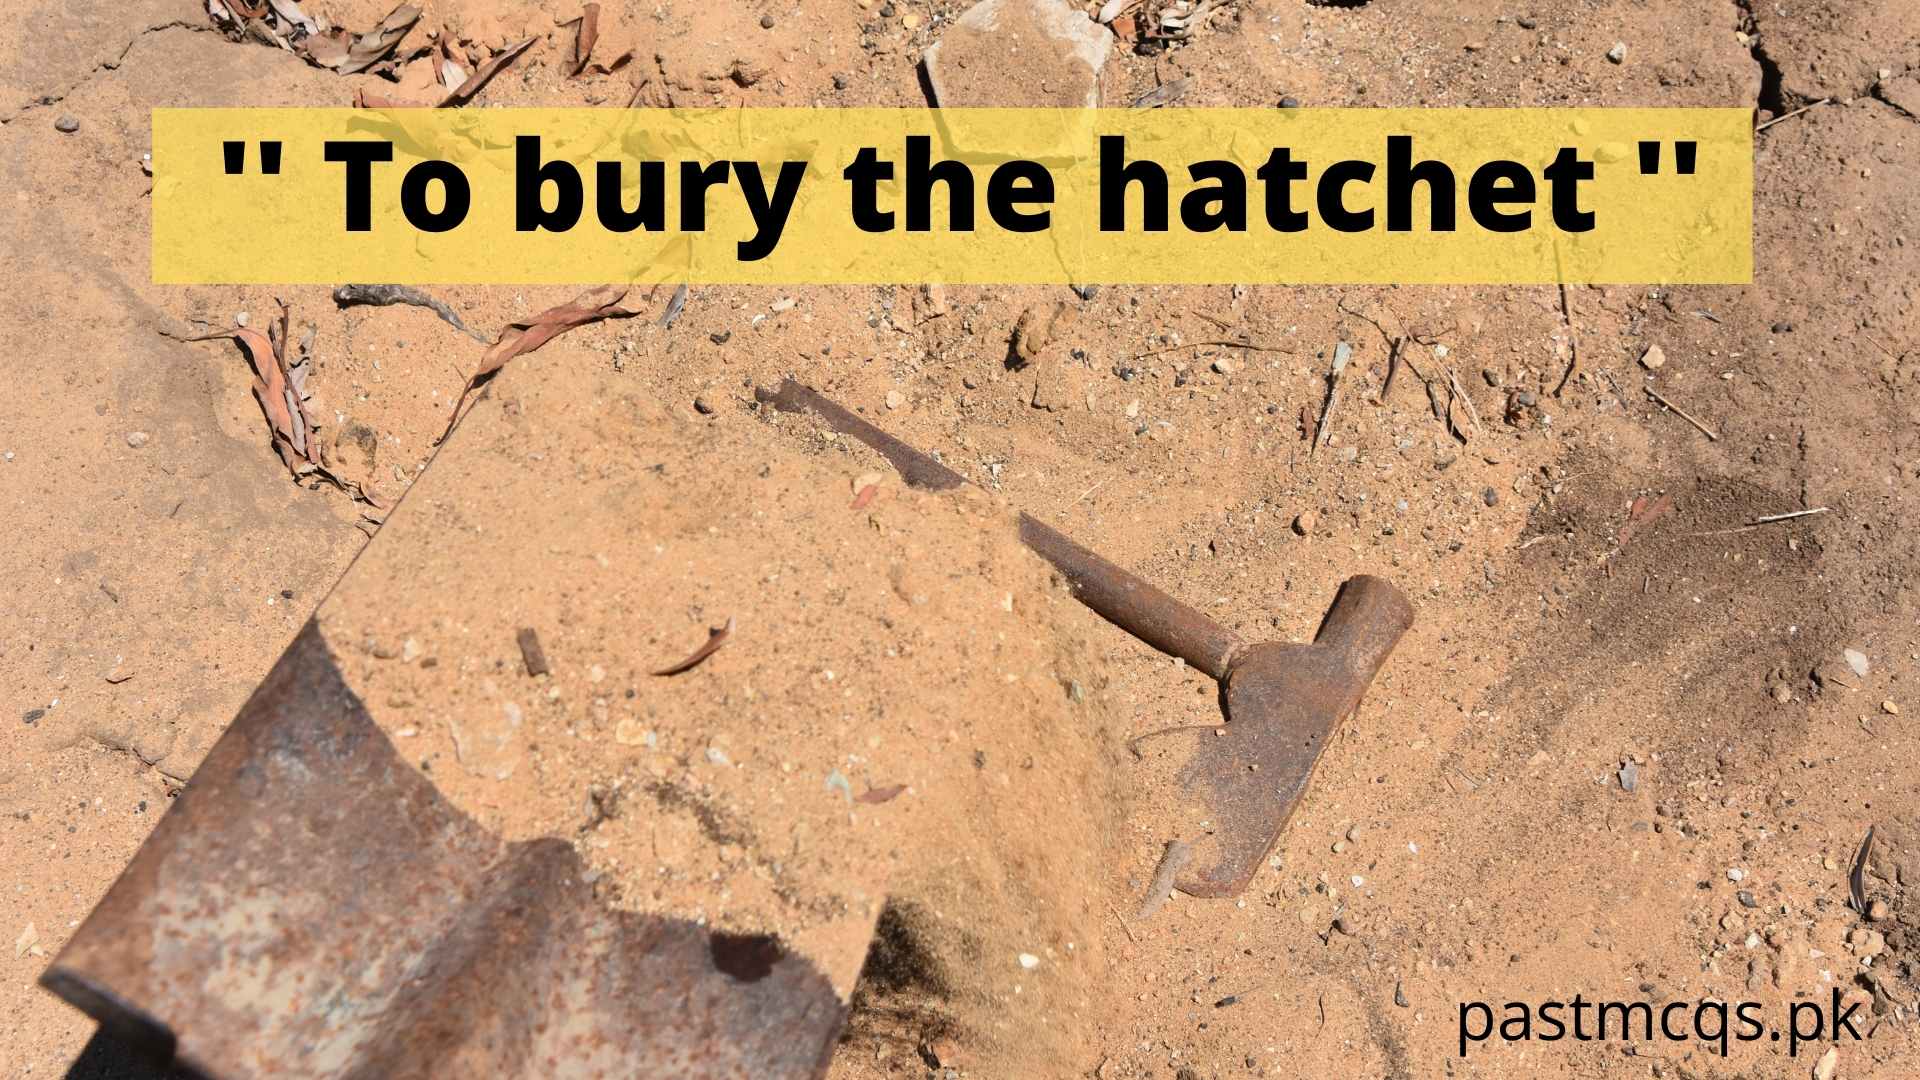 To bury the hatchet